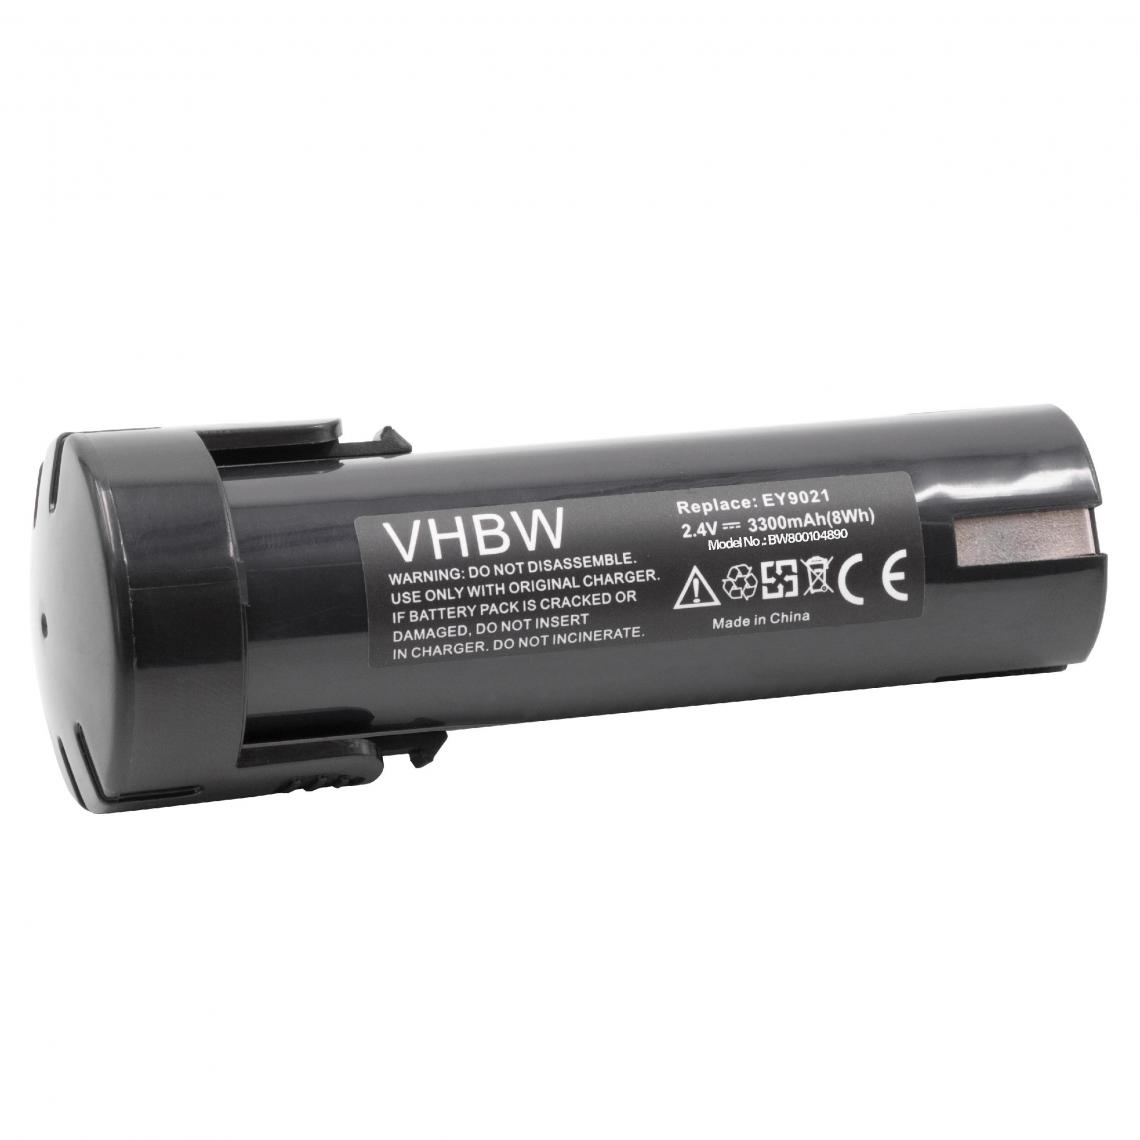 Vhbw - vhbw Batterie remplacement pour Panasonic 6538 1, 6539 6, 6540 1, 6545 6, 6546 6, 6547 1, 6550 20 pour outil électrique (3300mAh NiMH 2,4V) - Clouterie